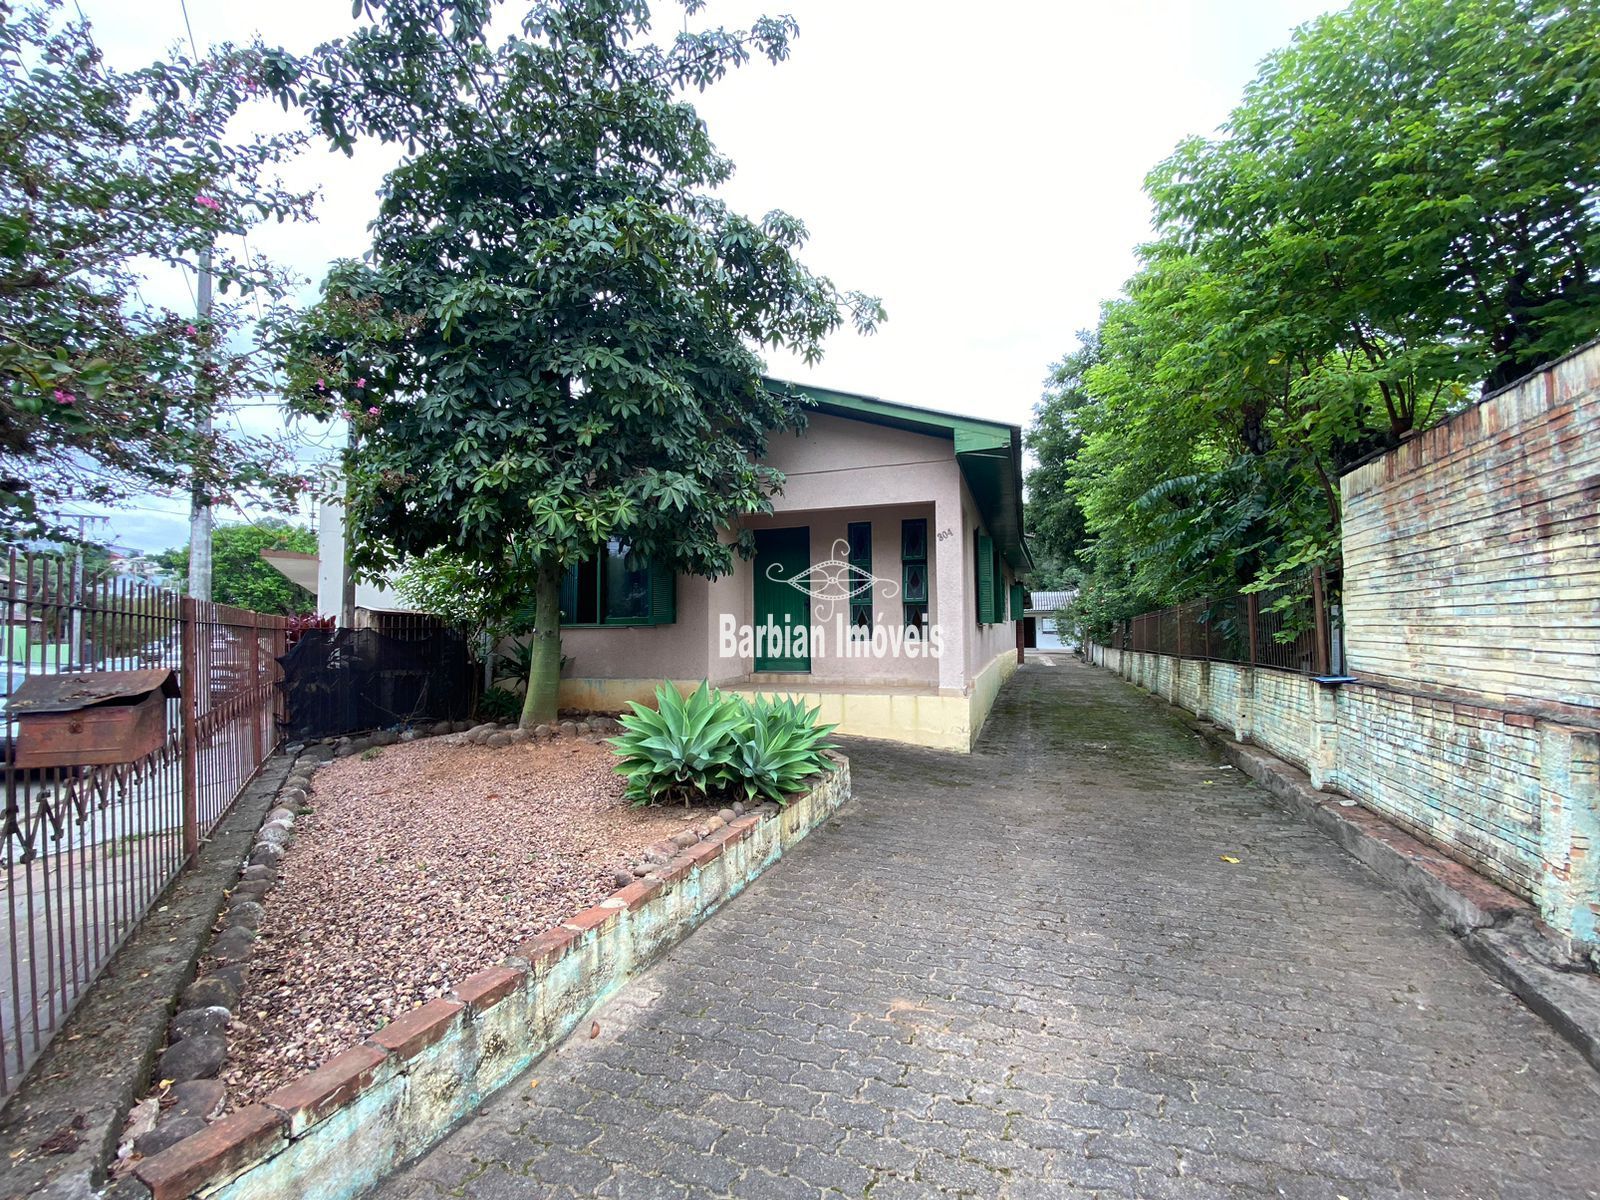 Casa  venda  no Bonfim - Santa Cruz do Sul, RS. Imveis